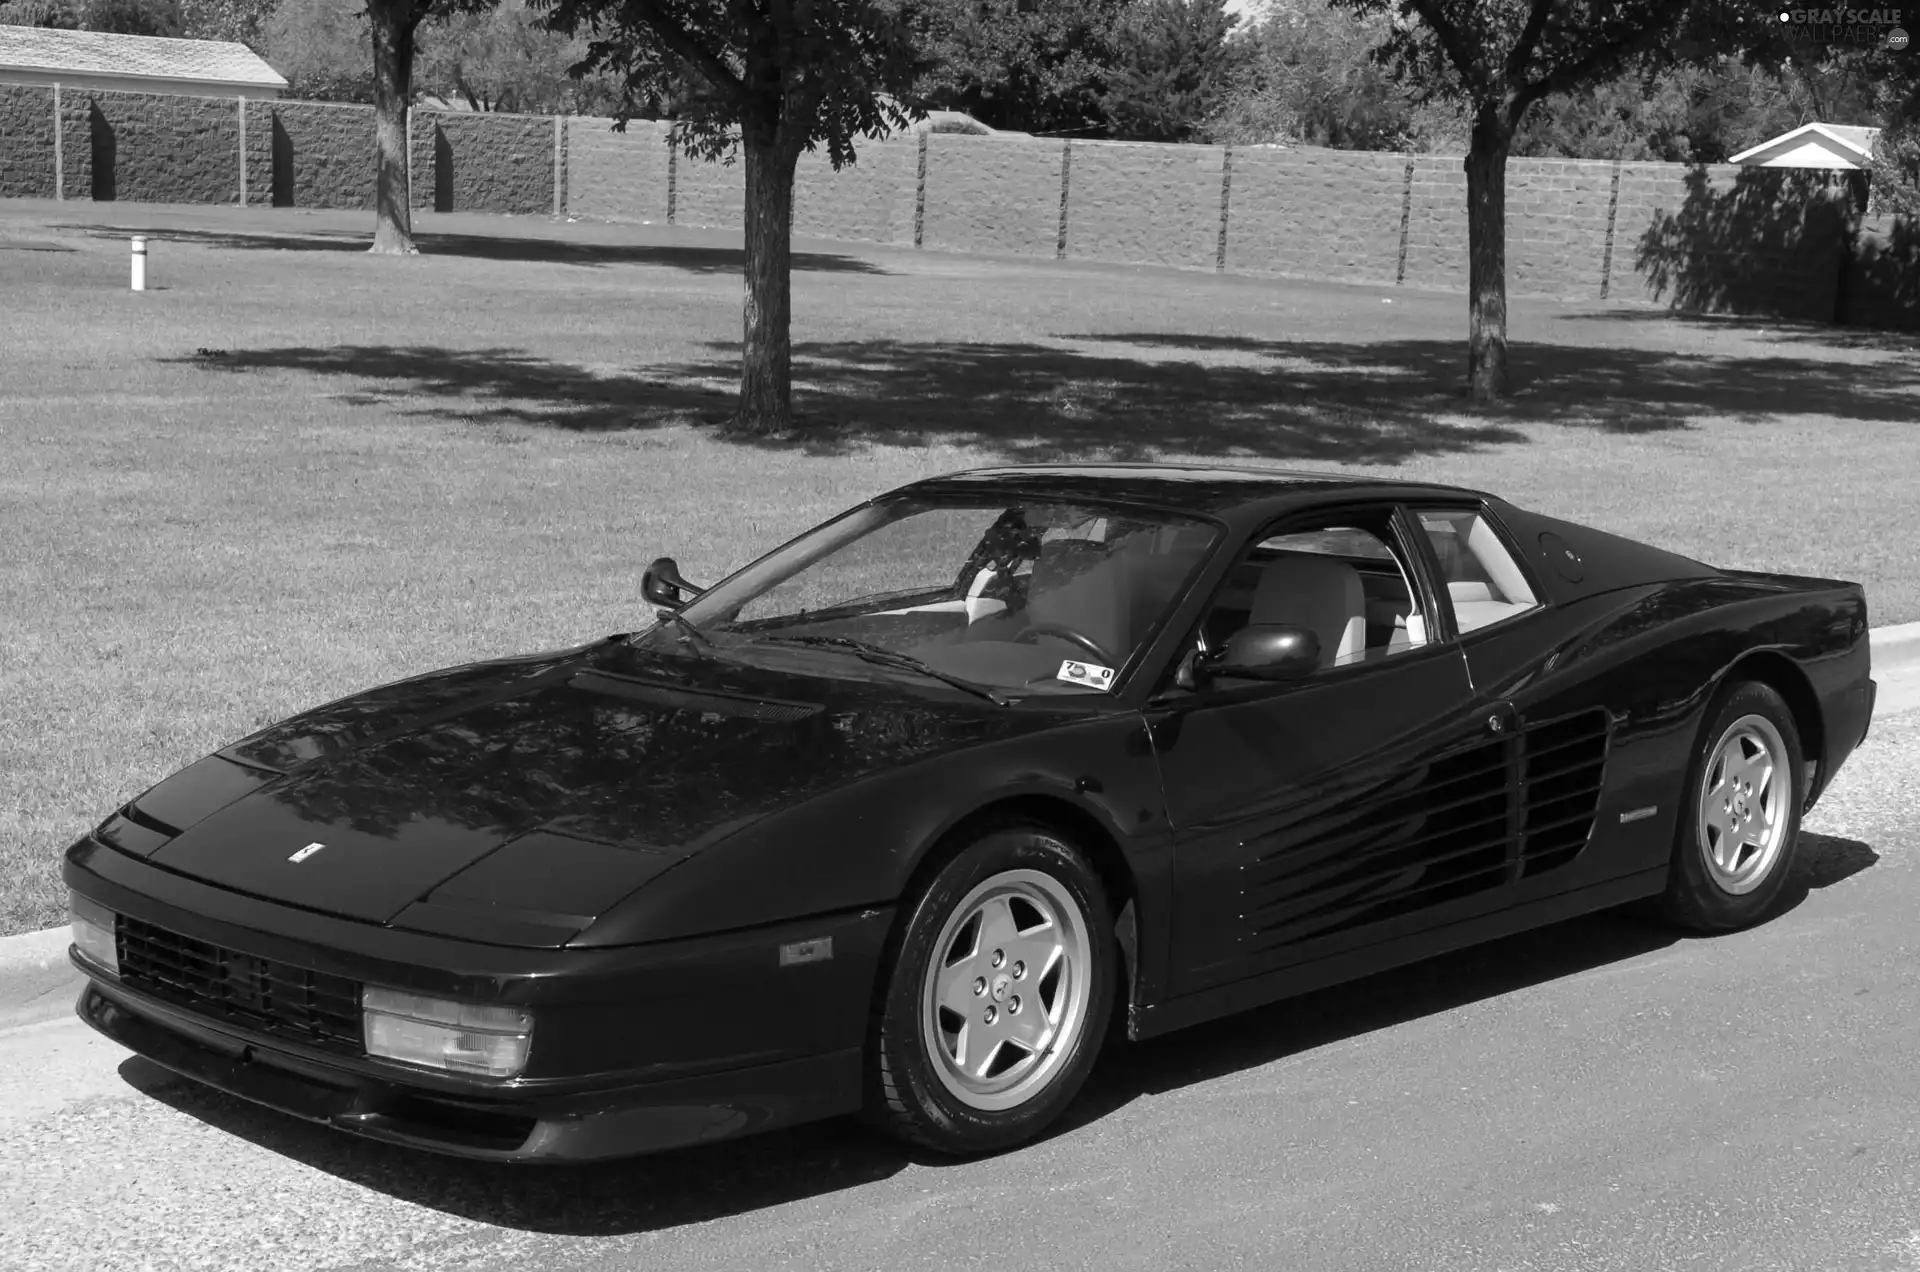 Black, Ferrari Testarossa